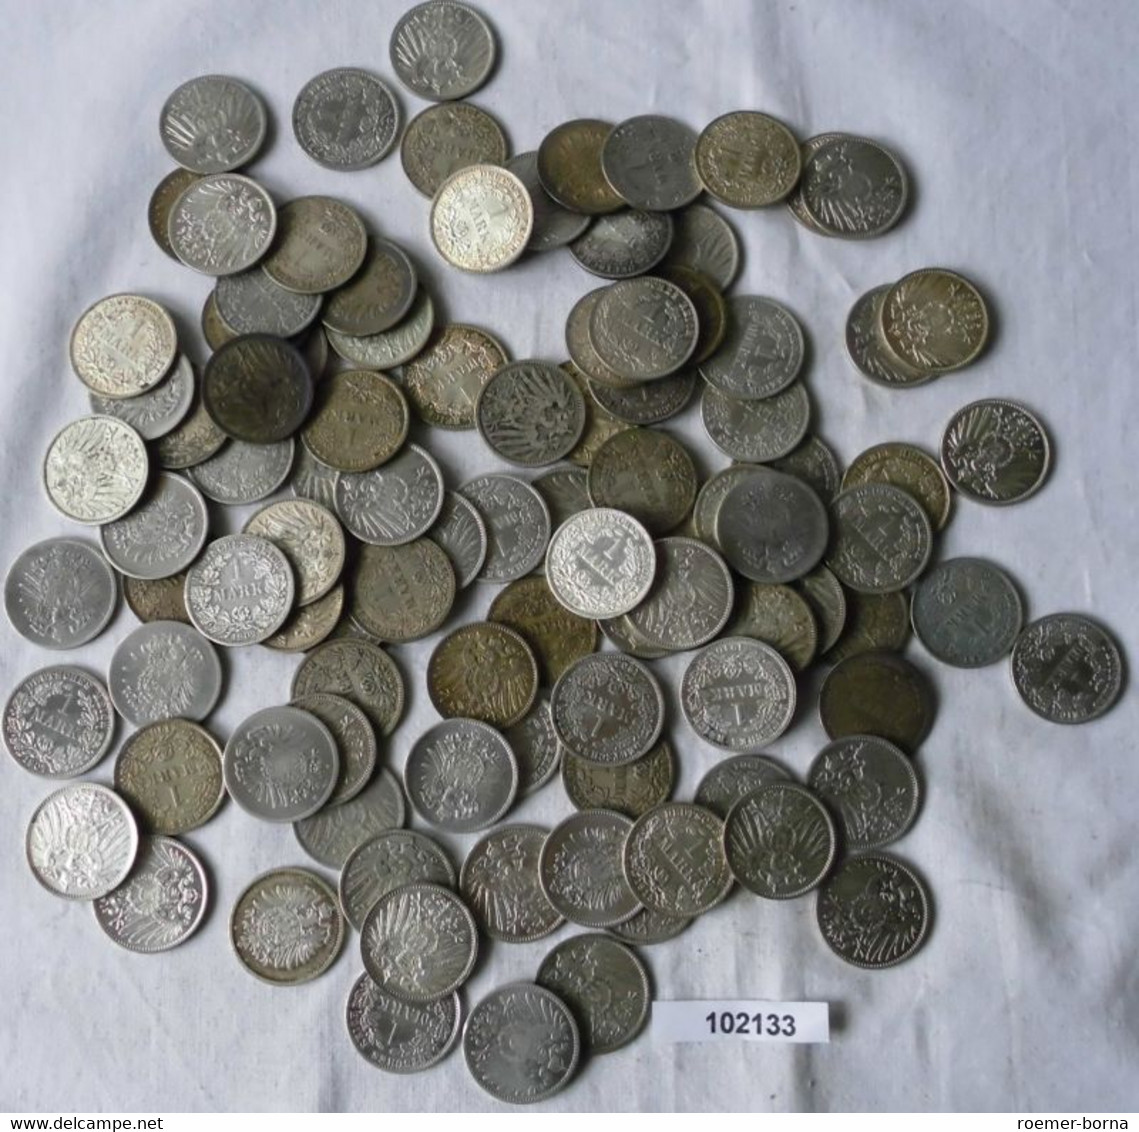 Seltene Sammlung 100 Silbermünzen 1 Mark Deutsches Reich Kaiserreich (102133) - Kiloware - Münzen